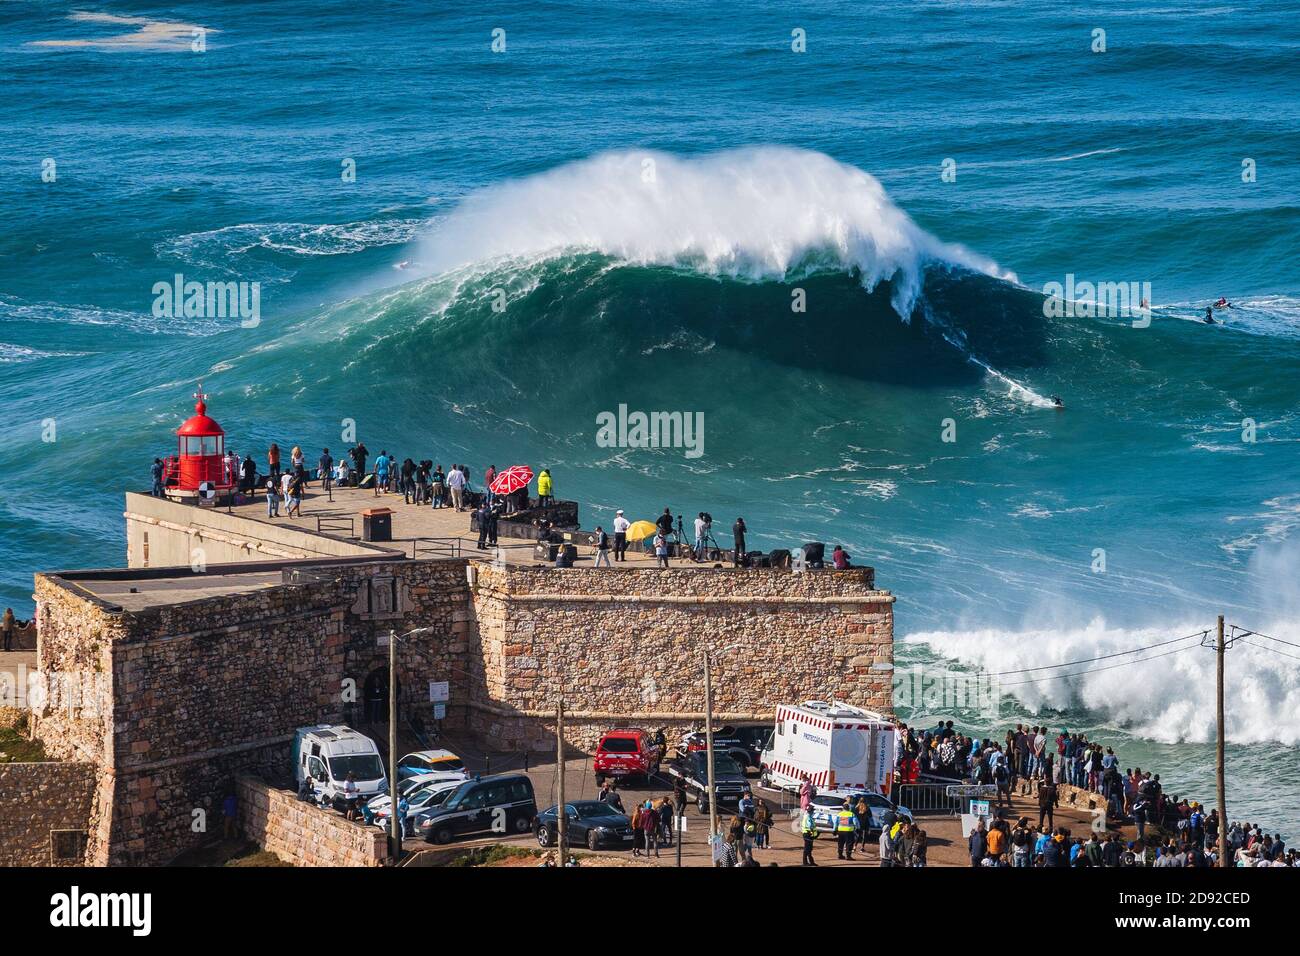 Surfista che cavalcano un'enorme onda vicino al faro di Nazare, Portogallo. Nazare è noto ai surfisti per avere le onde più grandi del mondo. Foto Stock